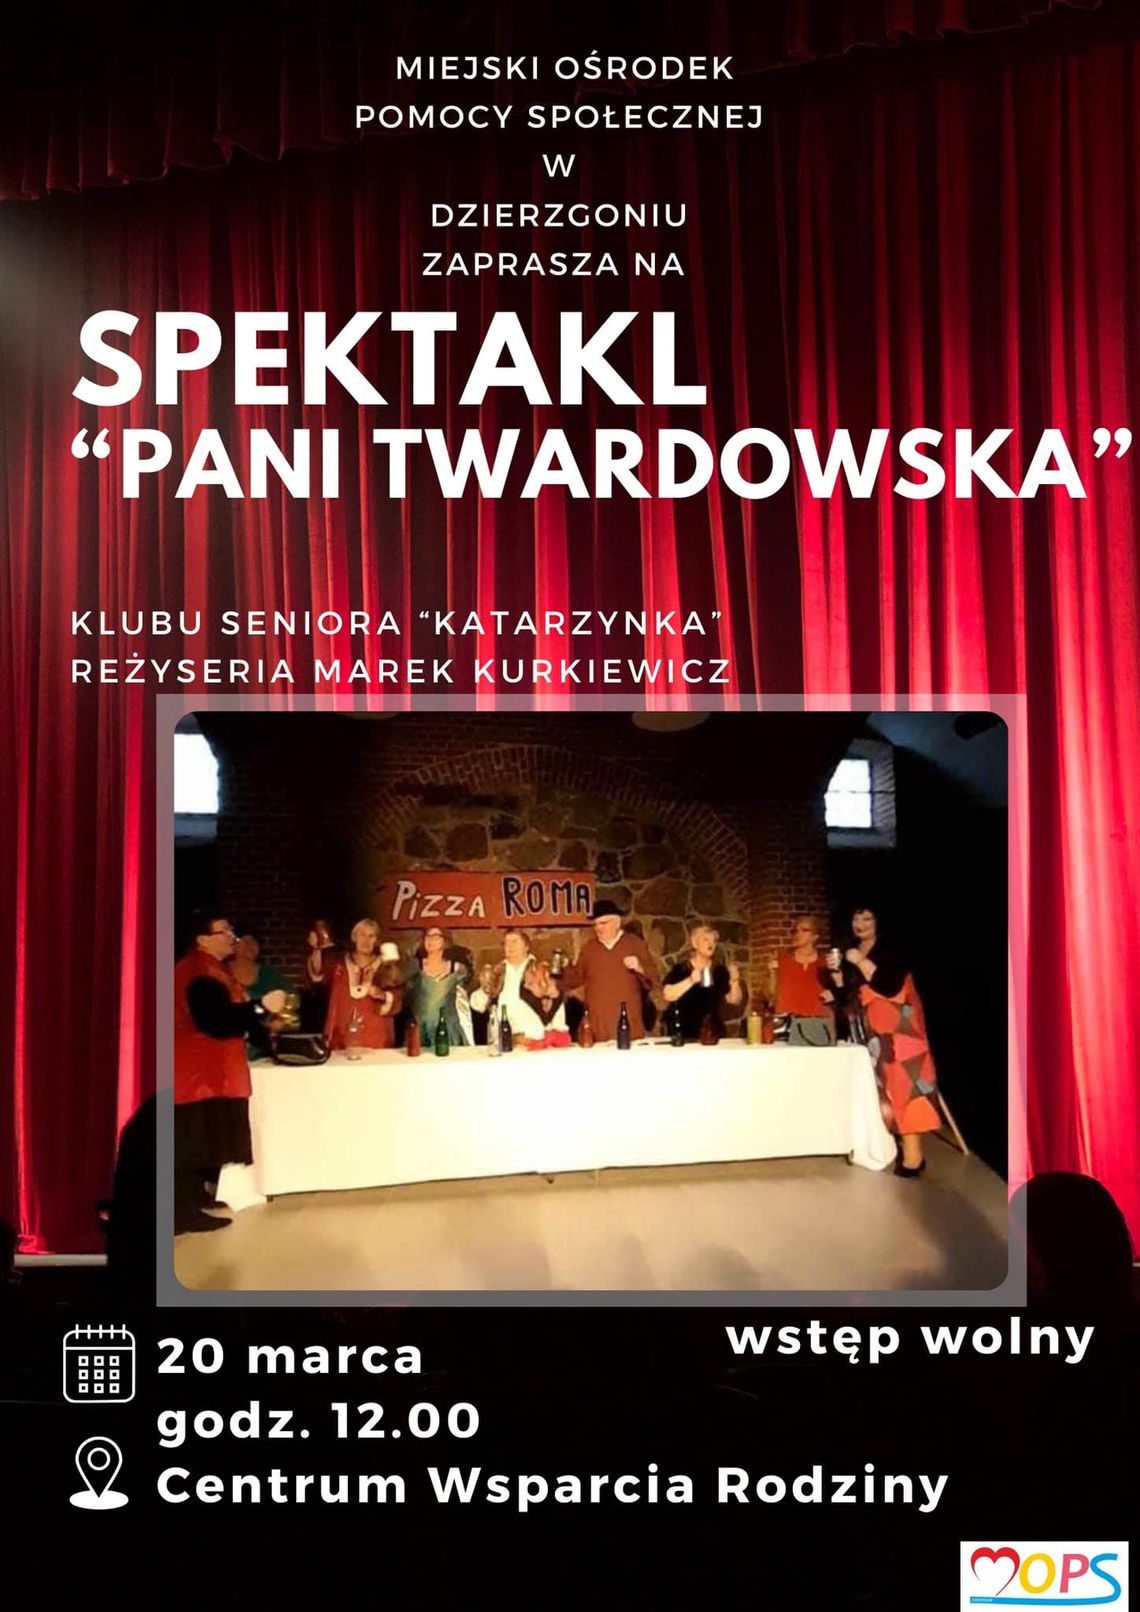 Spektakl "Pani Twardowska" w Dzierzgoniu